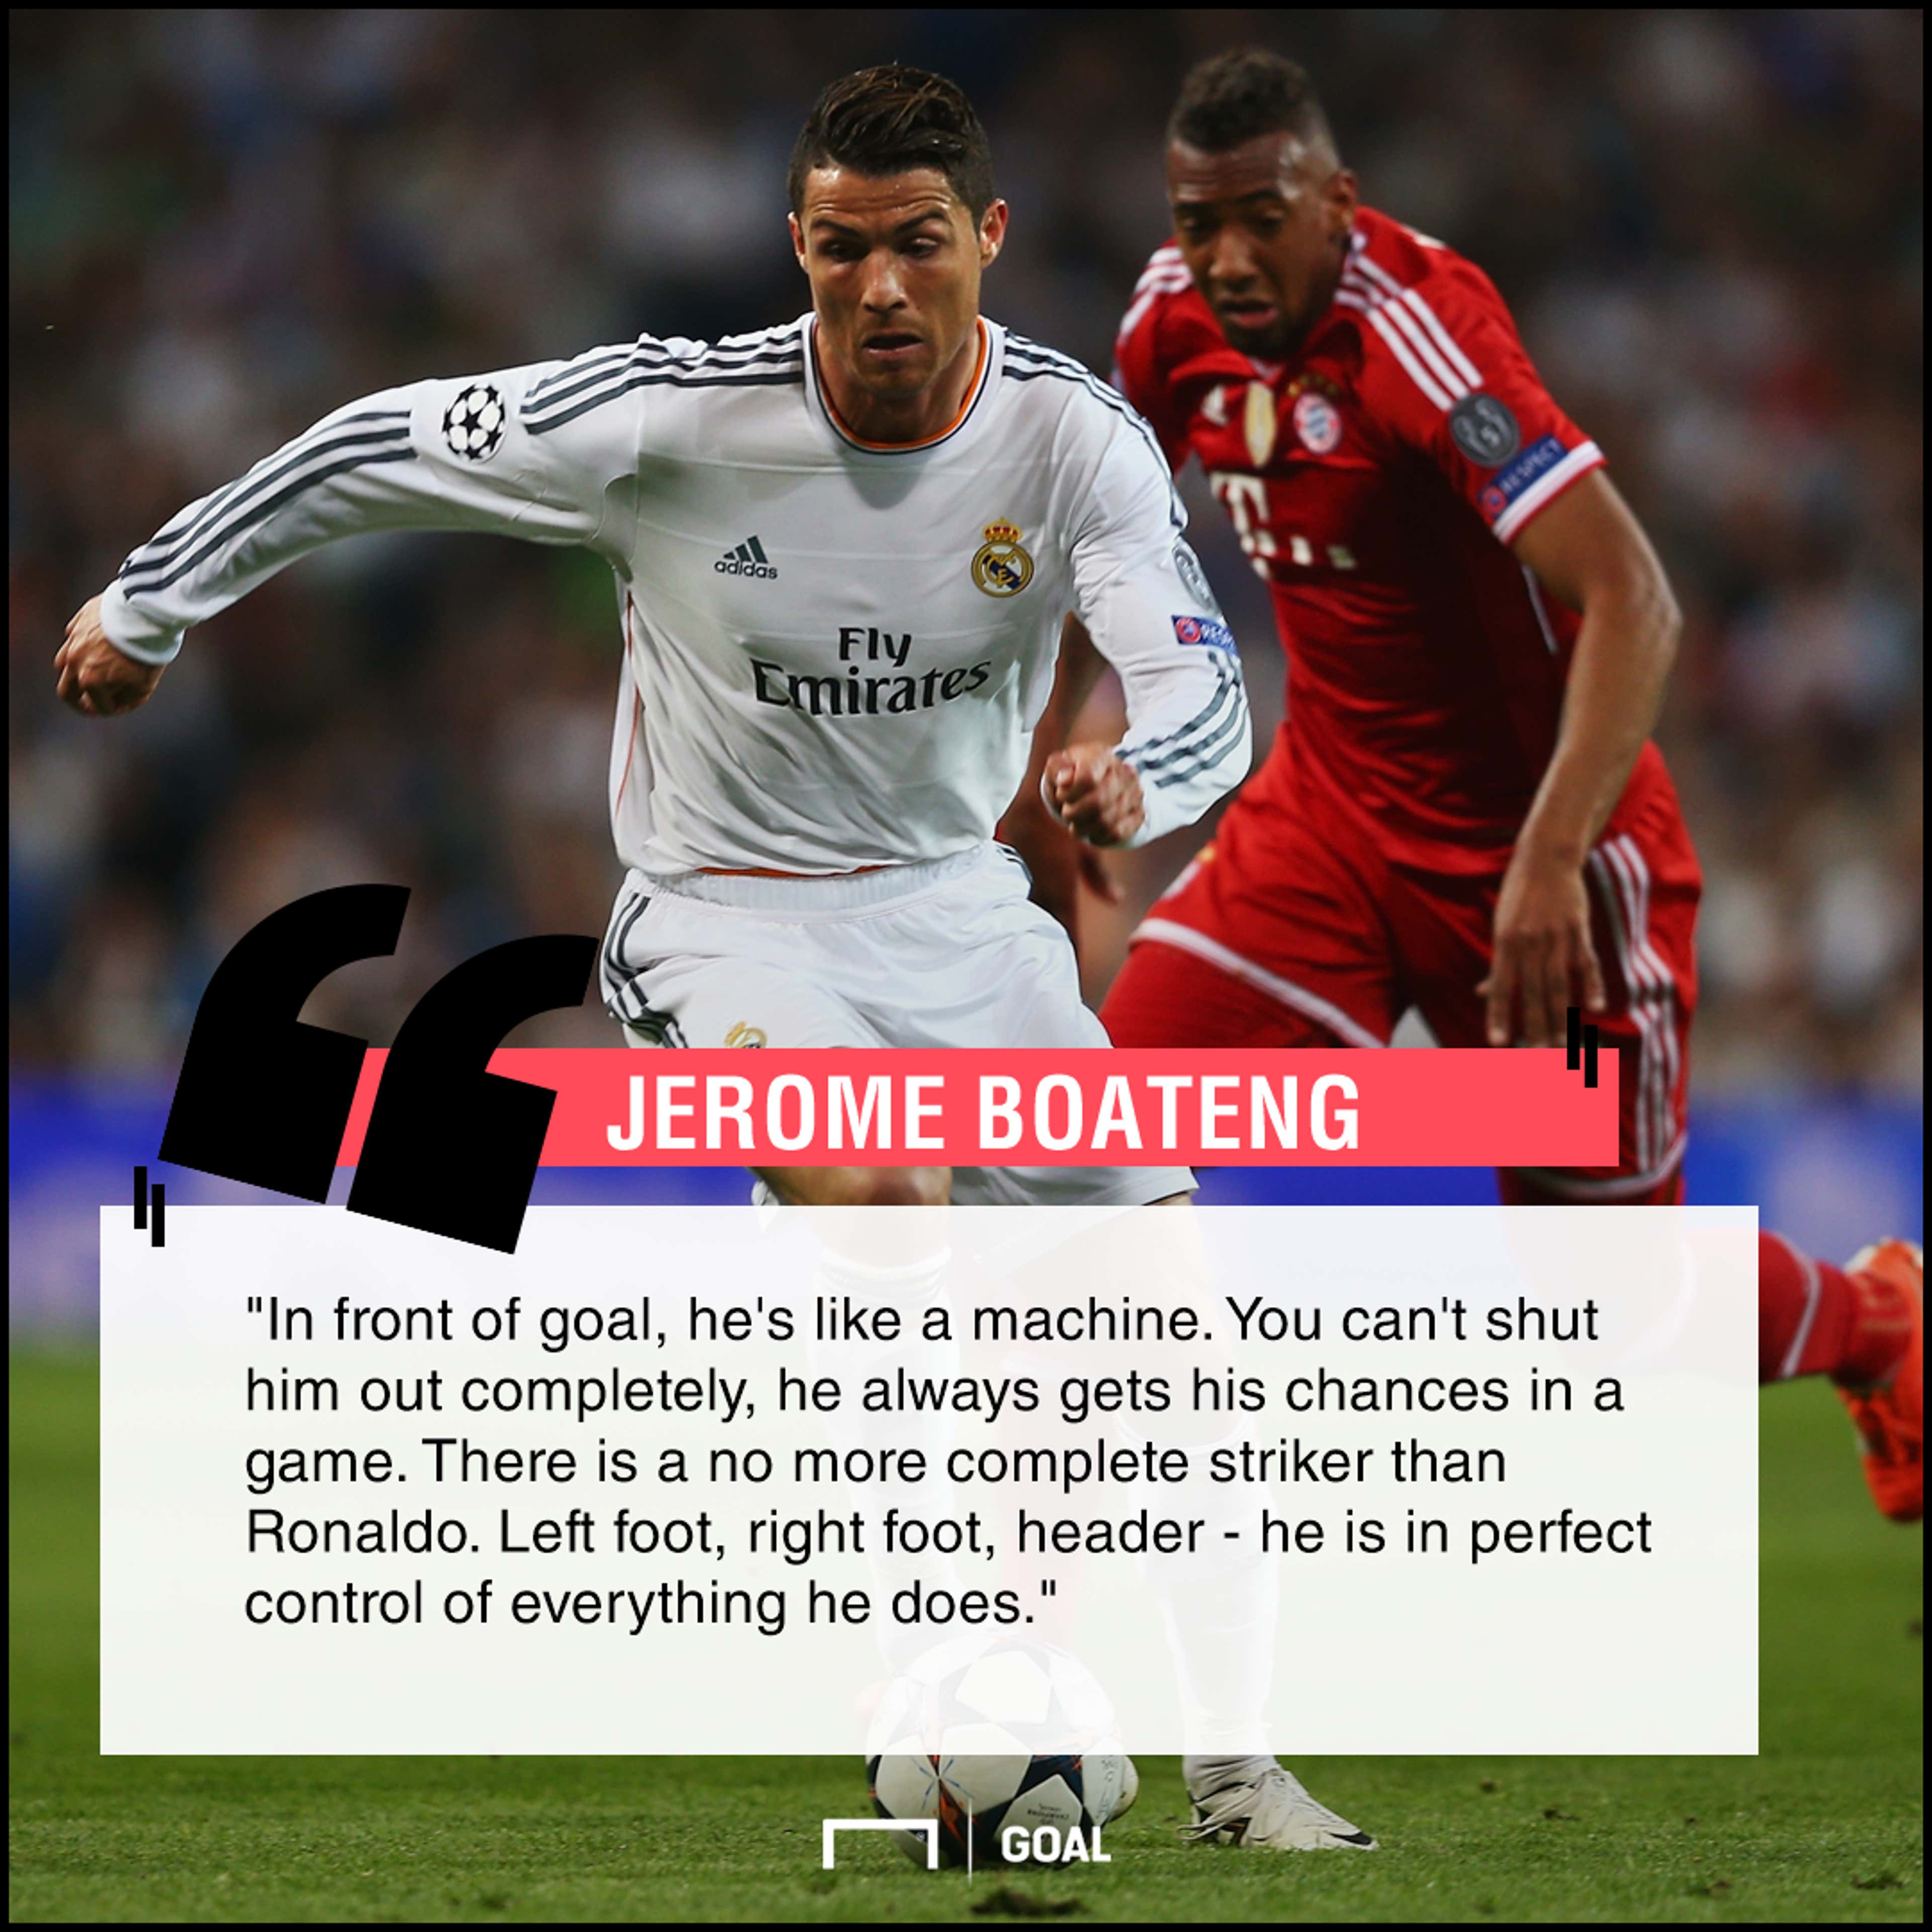 Cristiano Ronaldo a machine Jerome Boateng